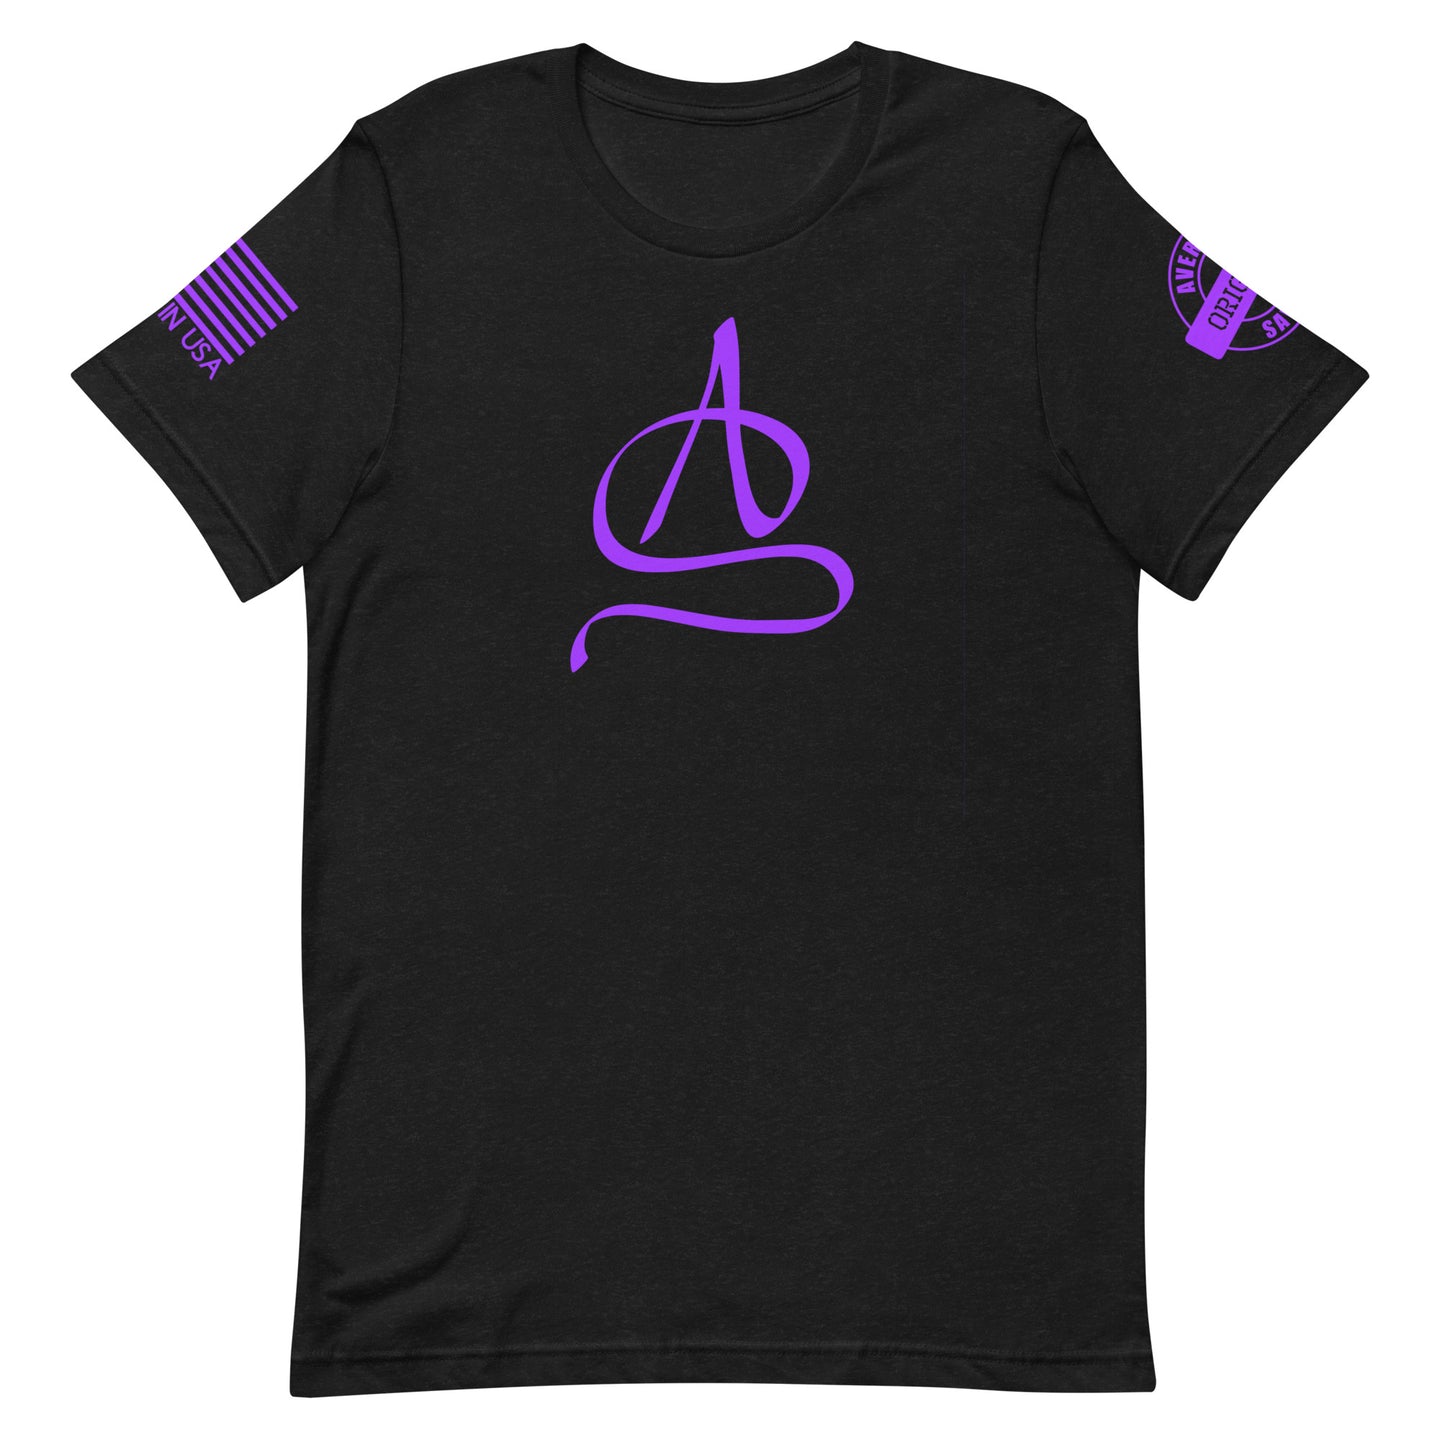 AS - Tshirt (Purple)